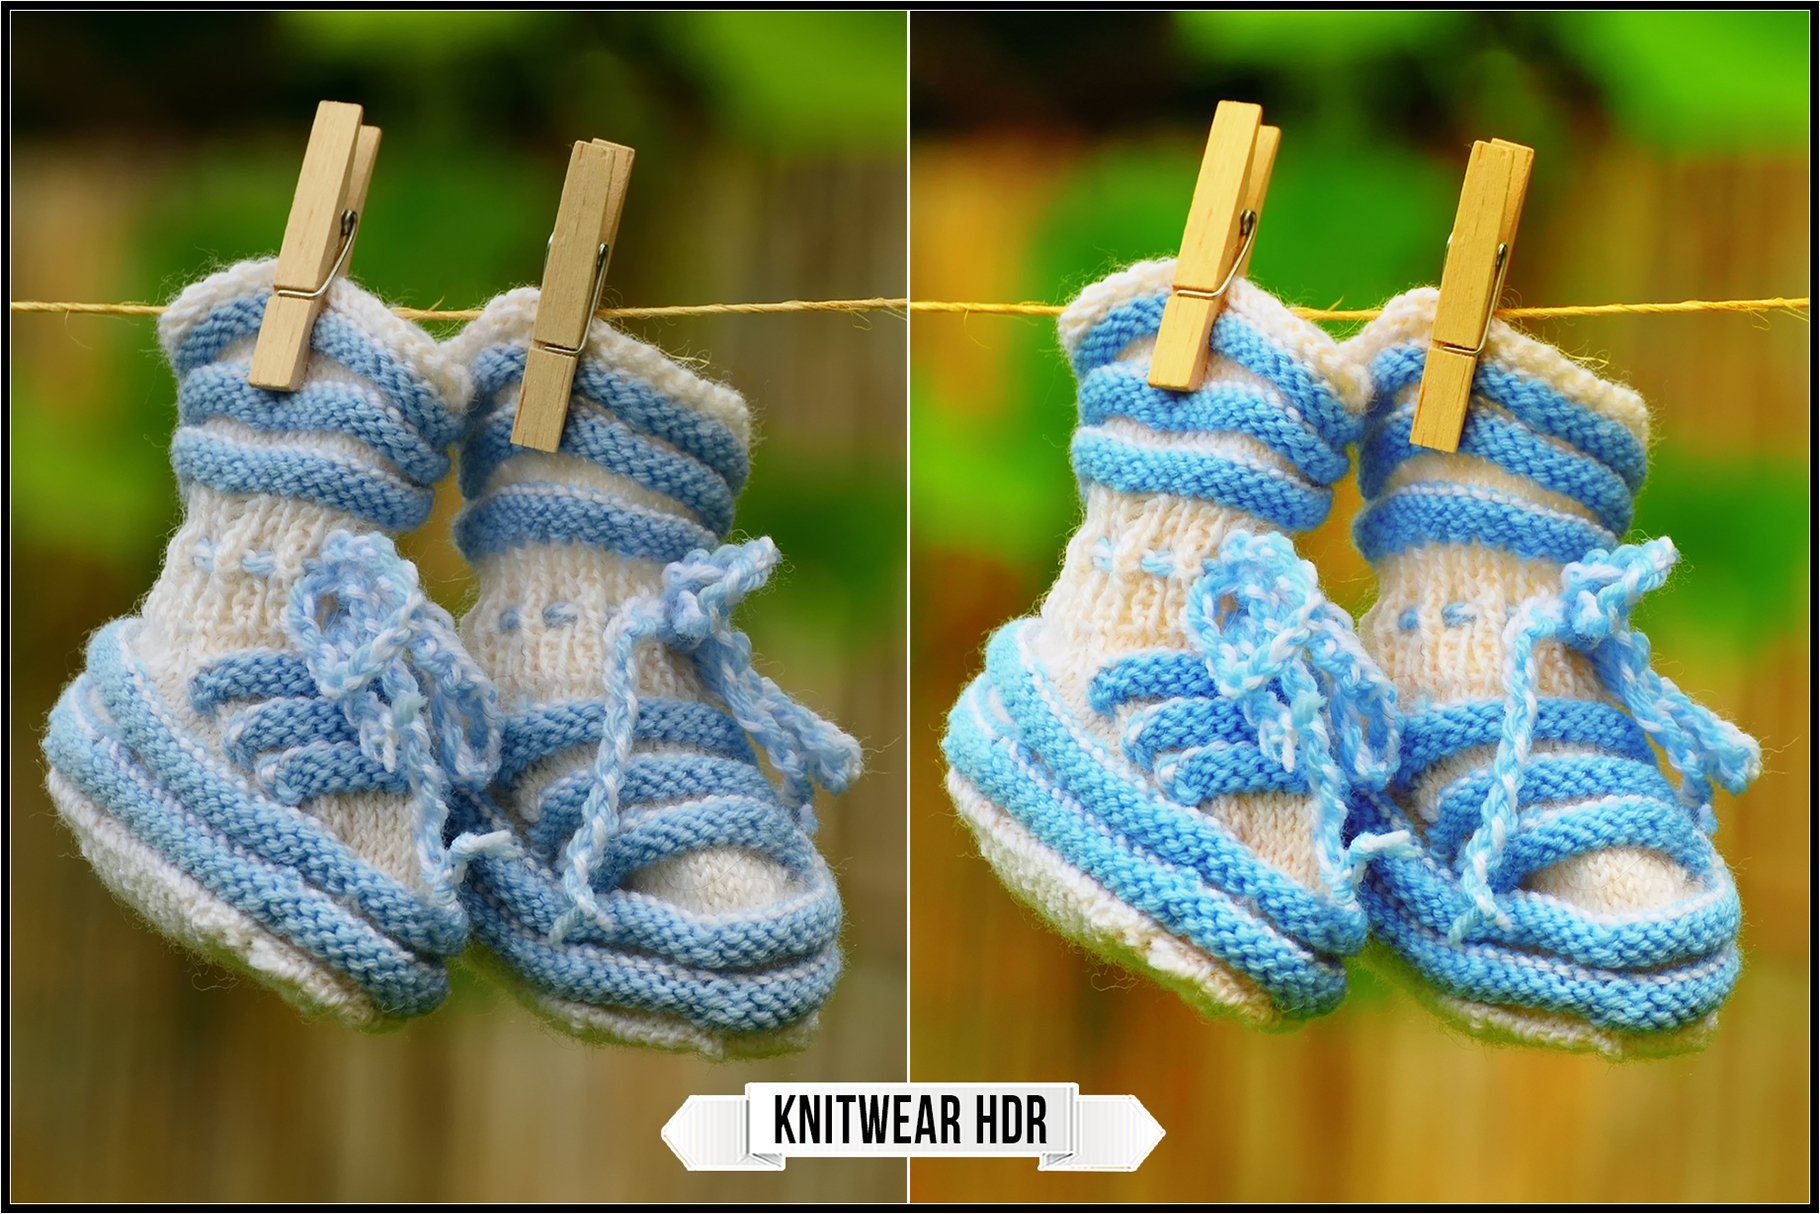 knitwear hdr 224